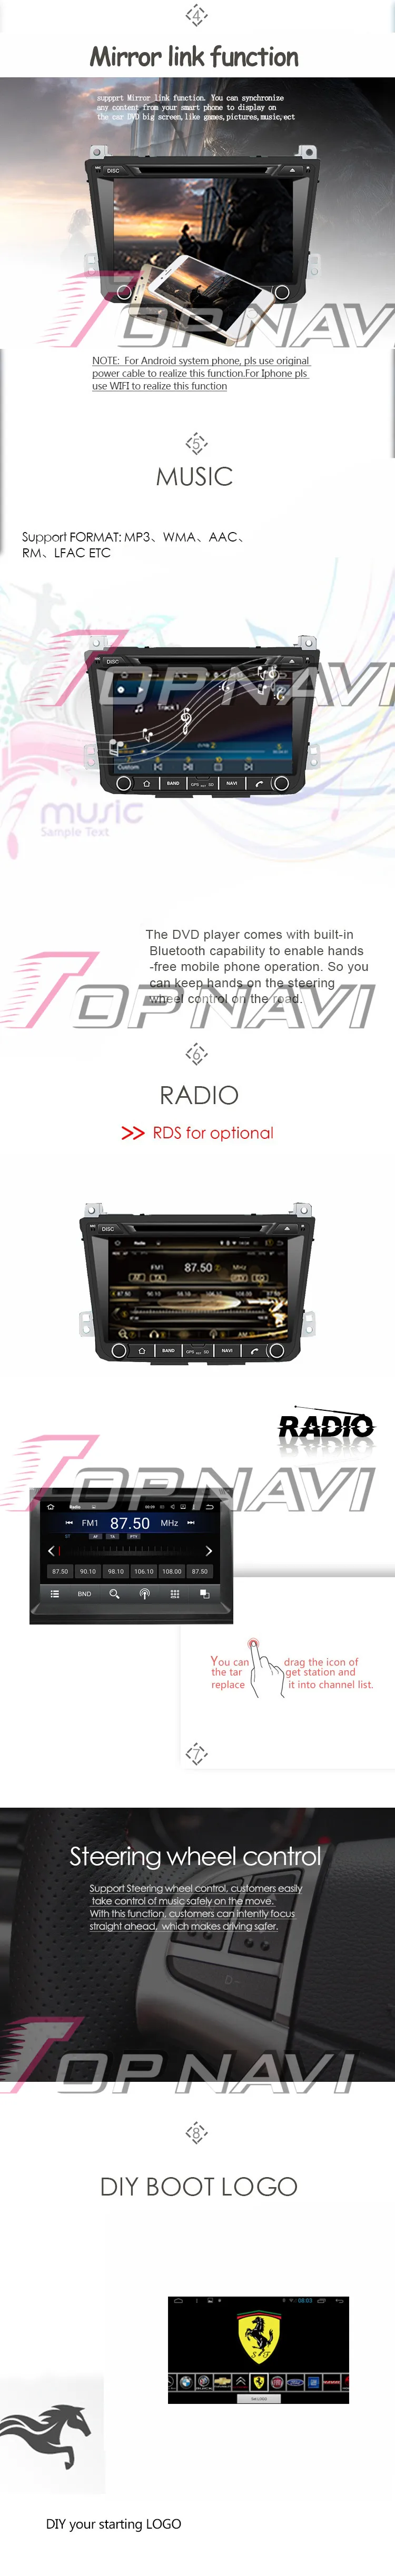 Topnavi 8 ''Восьмиядерный Android 8,0 автомобиль gps навигации для HYUNDAI IX25 2014-Авто радио мультимедиа аудио плеер двойной Din стерео